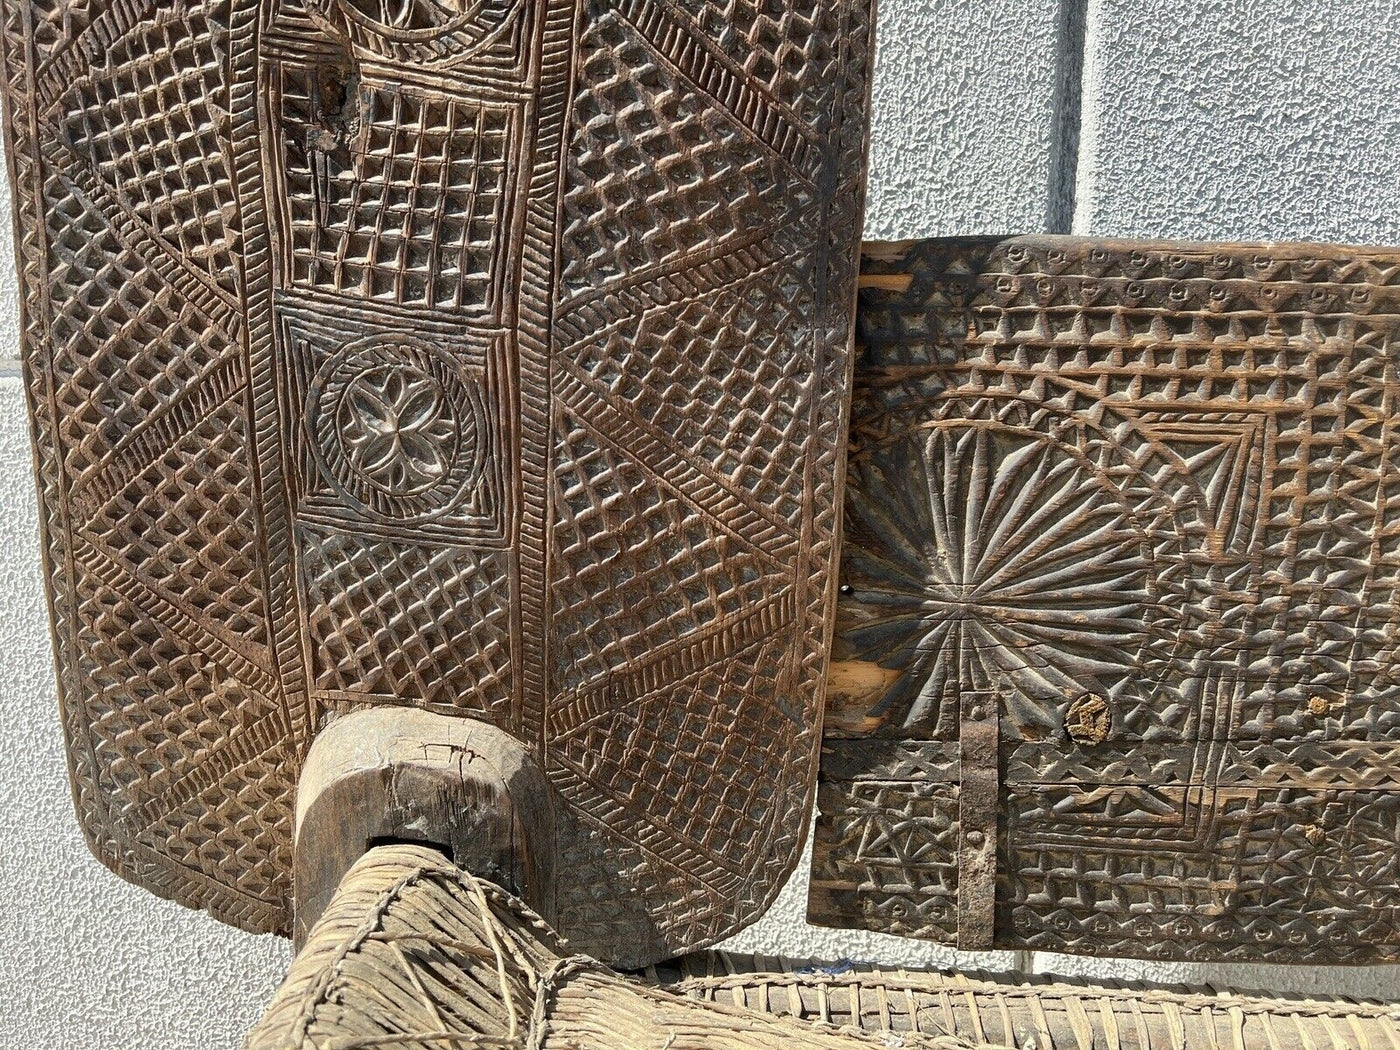 Antikes Orient Chair bed aus Nuristan Afghanistan / Pakistan Swat Valley Betten & Bettgestelle Orientbazar   